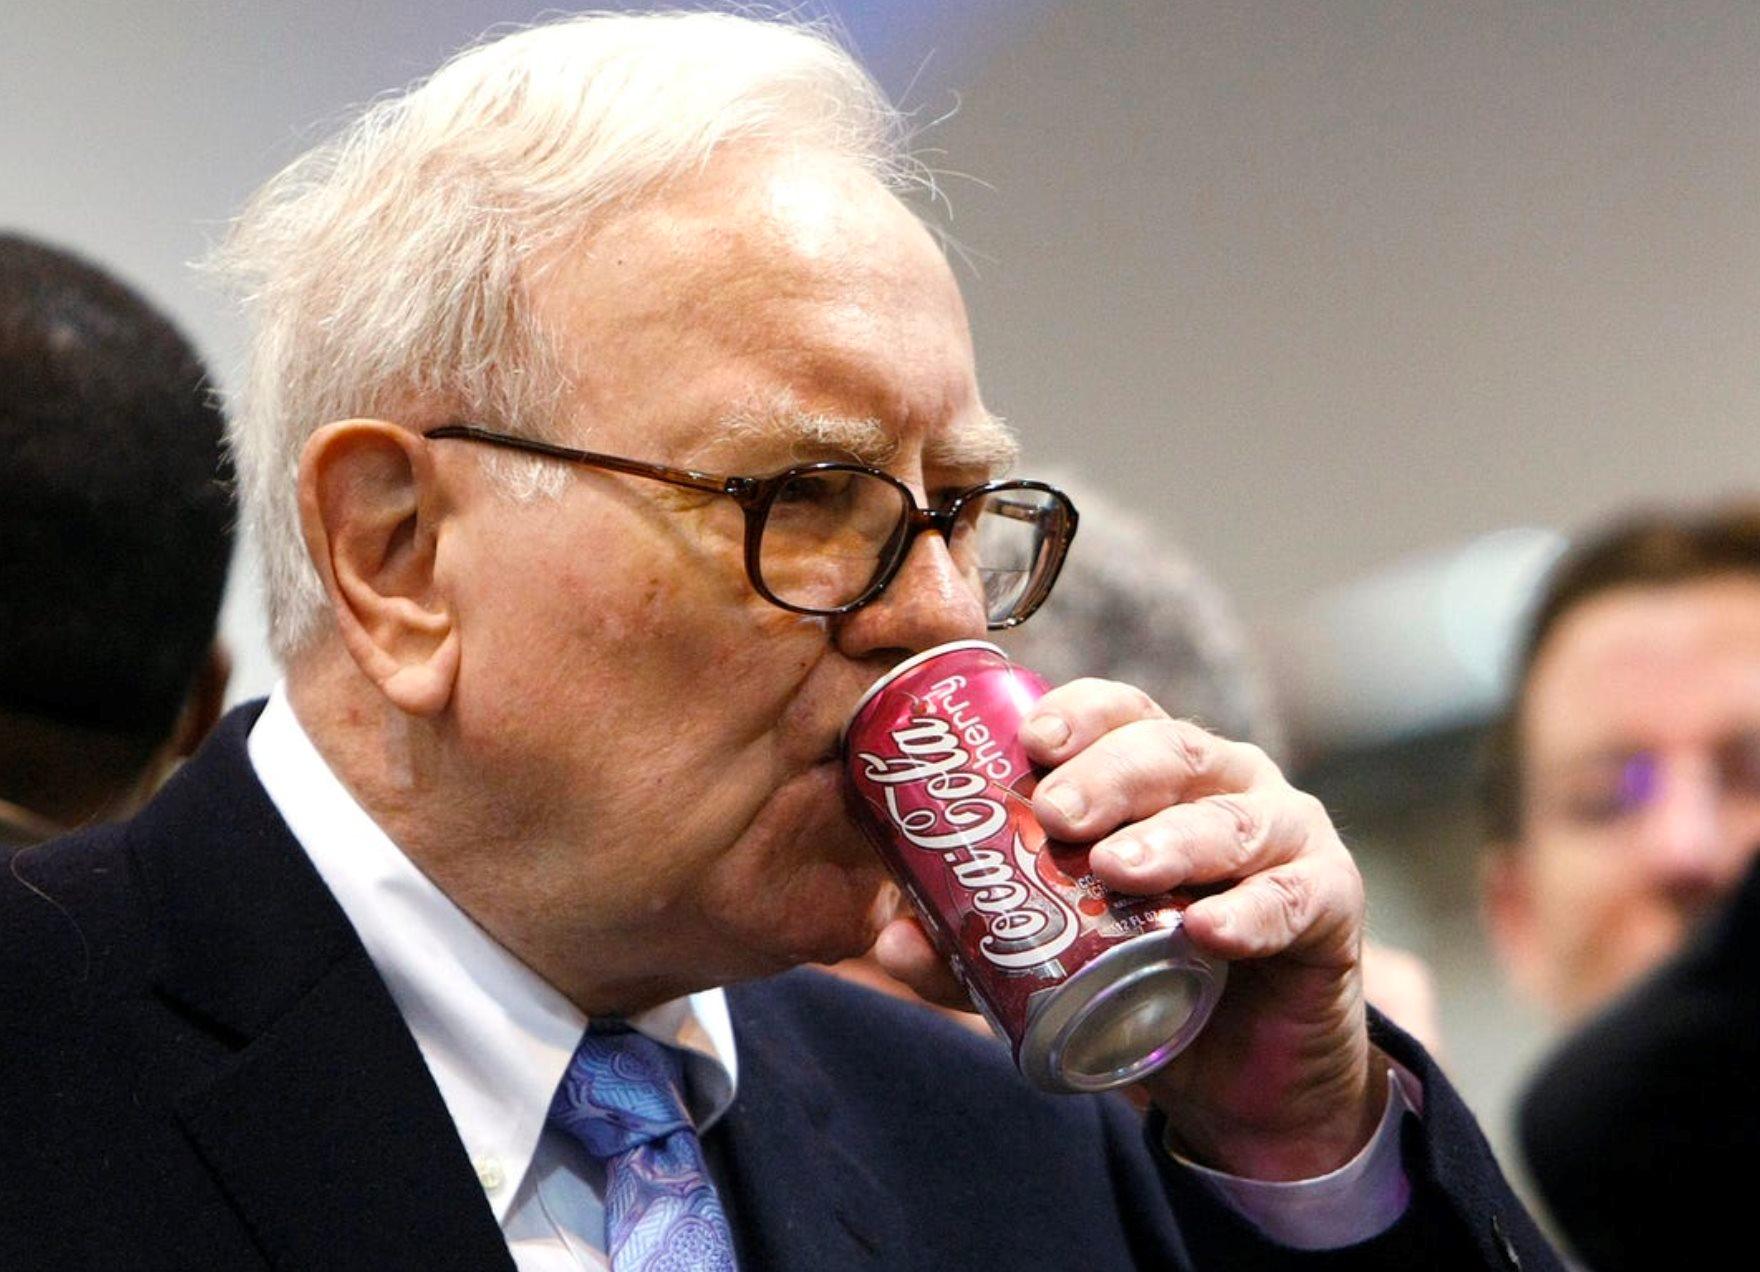 Một cổ phiếu được Warren Buffett nắm giữ suốt 35 năm: Năm nào cũng tăng cổ tức, lãi lớn đến mức vị tỷ phú không bao giờ có ý định bán - Ảnh 2.